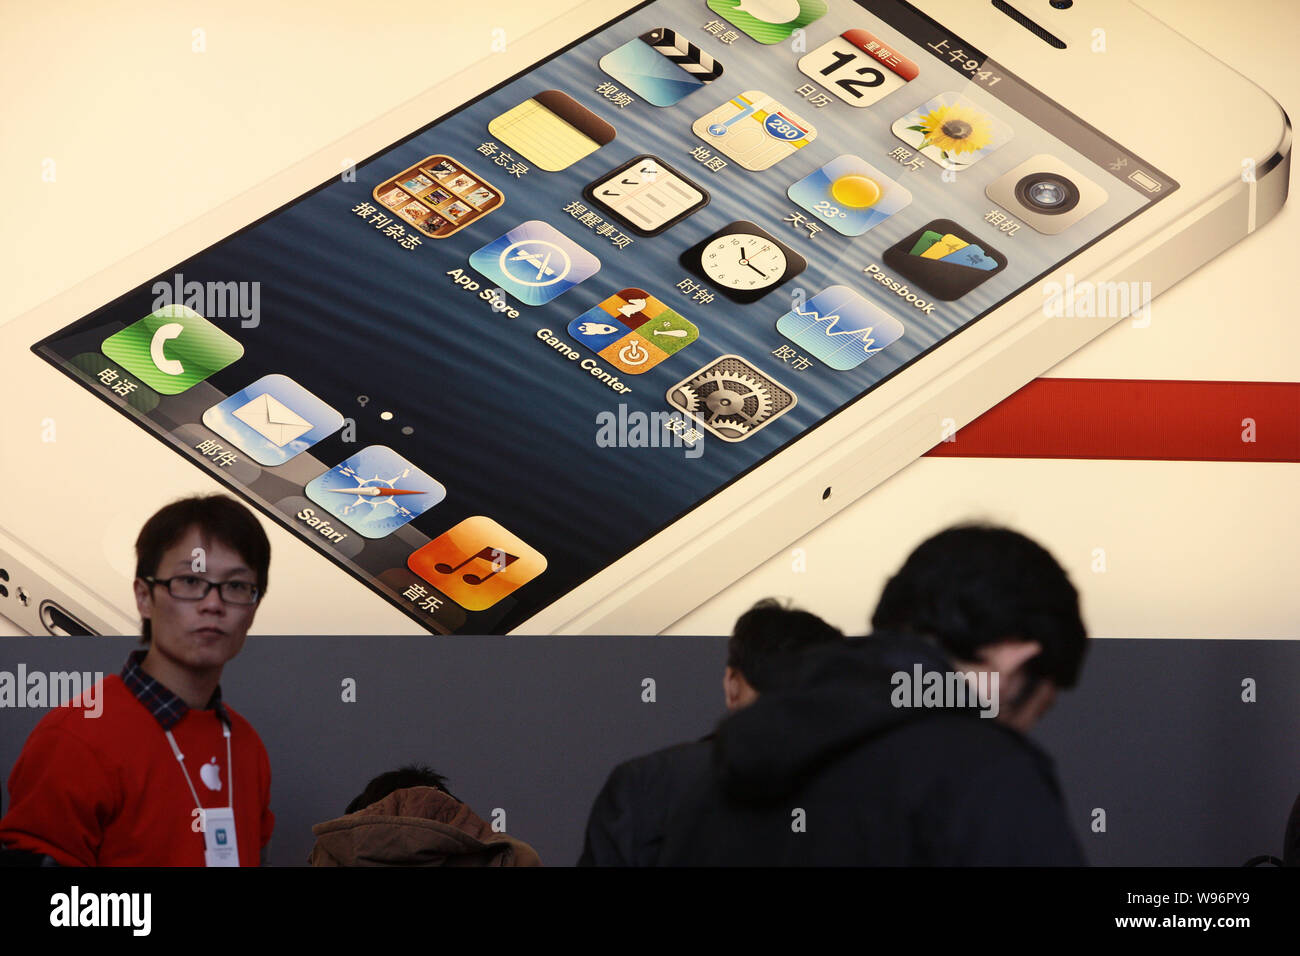 Los clientes probar el iPhone 5 inteligentes en una tienda de Apple en Shangai, China, 14 de diciembre de 2012. Las ventas del iPhone 5 han comenzado en China sobre Frid Foto de stock